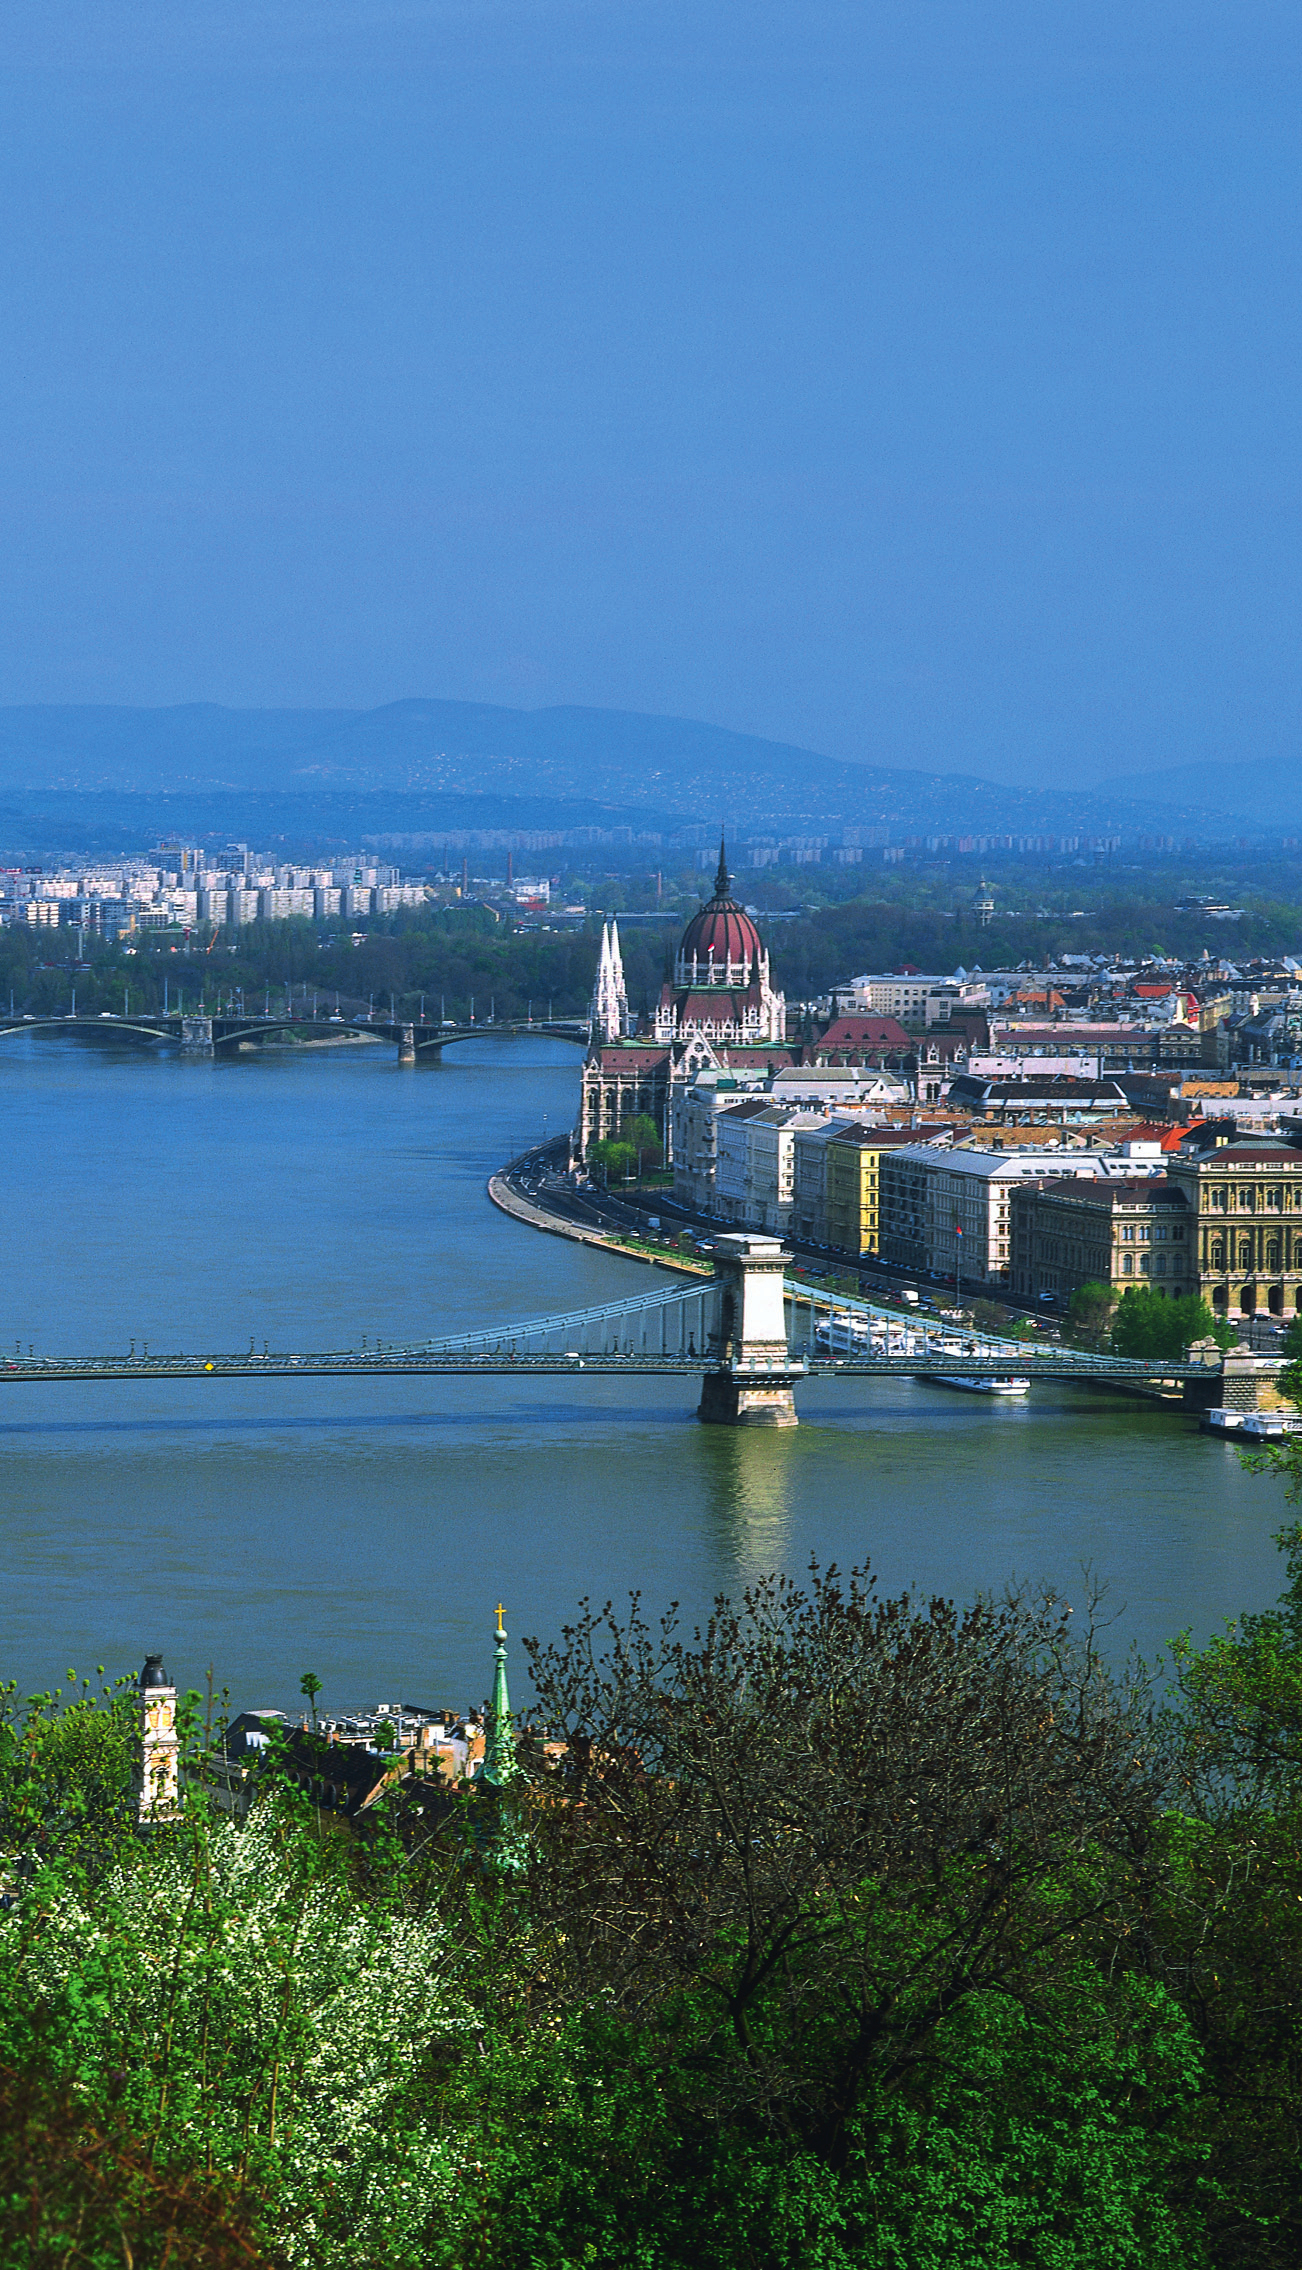 ENTDECKEN SIE BUDAPEST! Was für ein Panorama! Von der Fischerbastei schweift der Blick über die Donau und ihre Brücken auf die ungarische Hauptstadt.